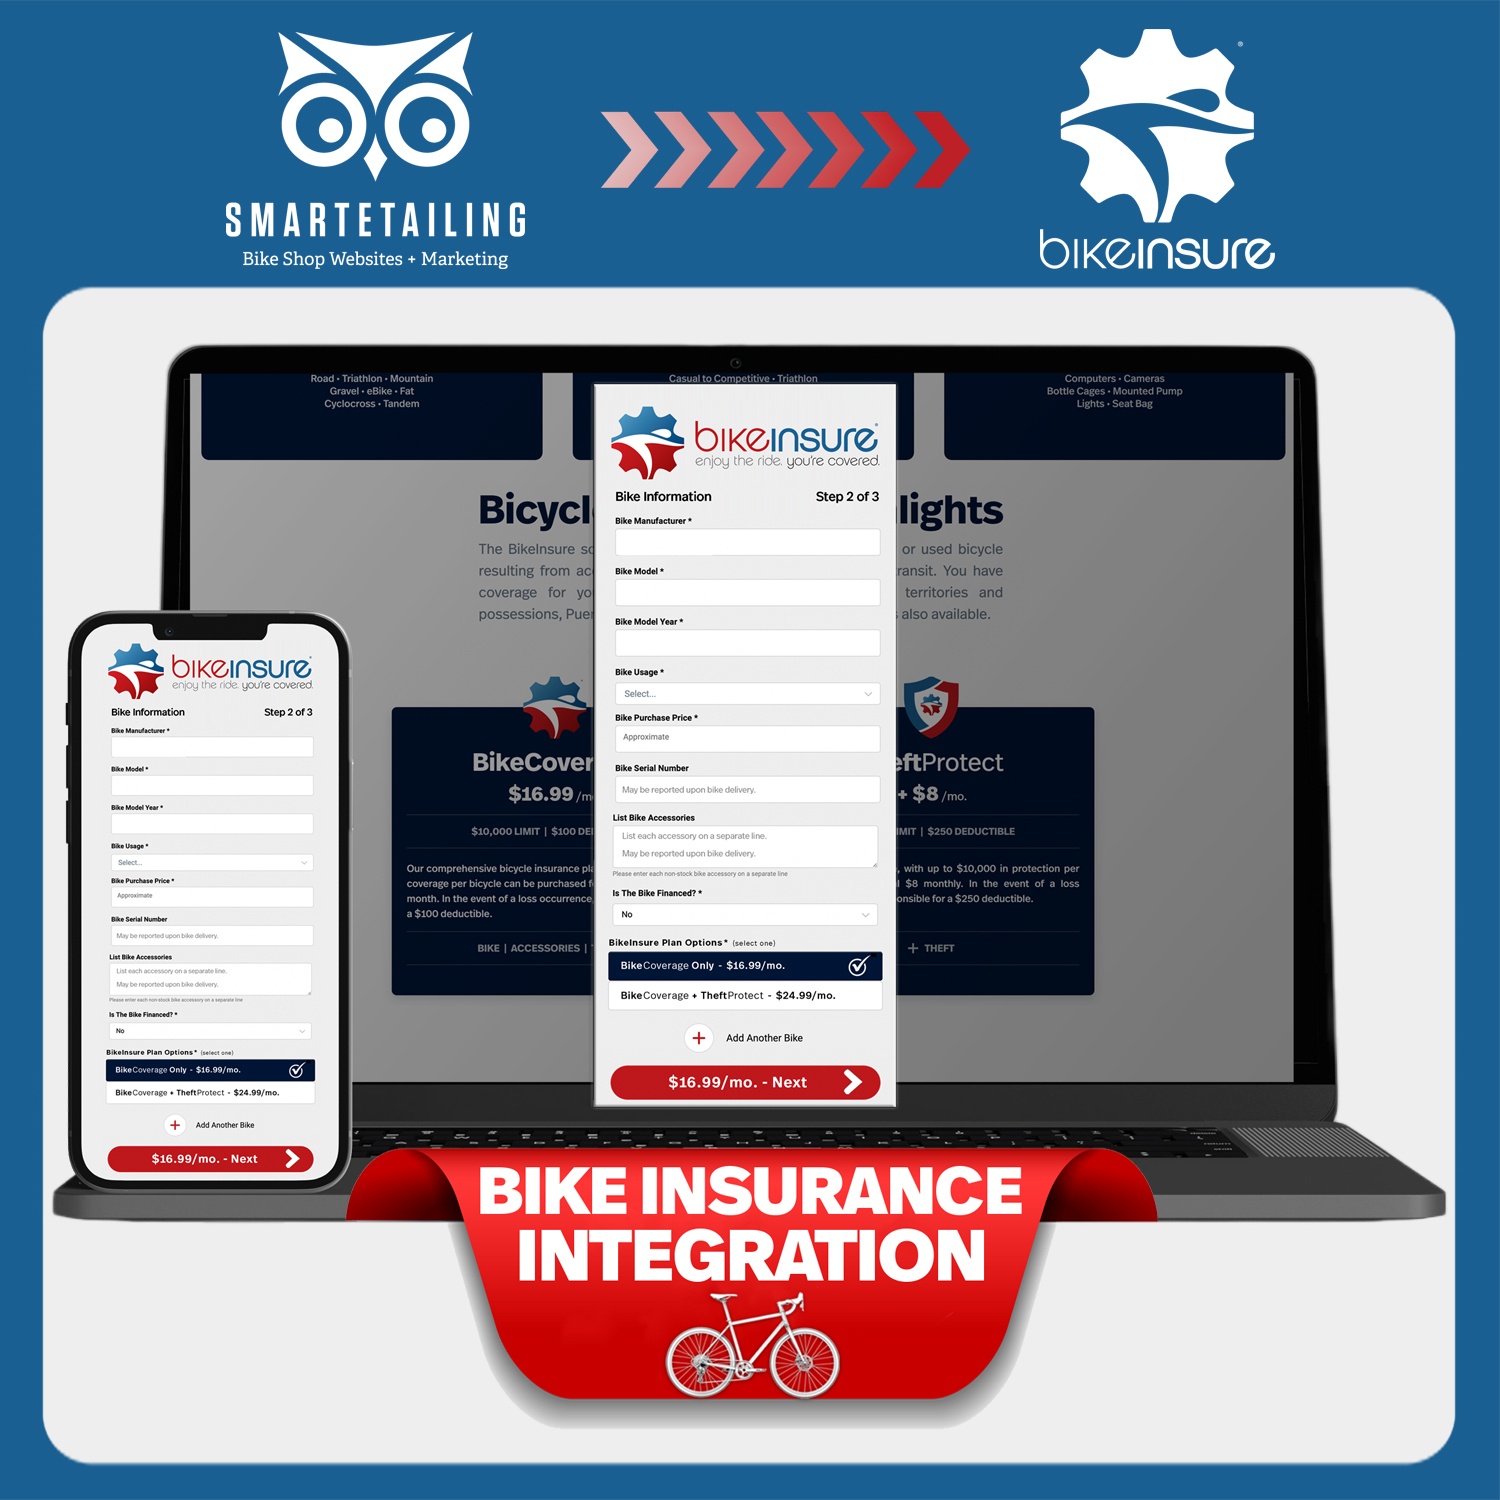 BikeInsure Announces Integration